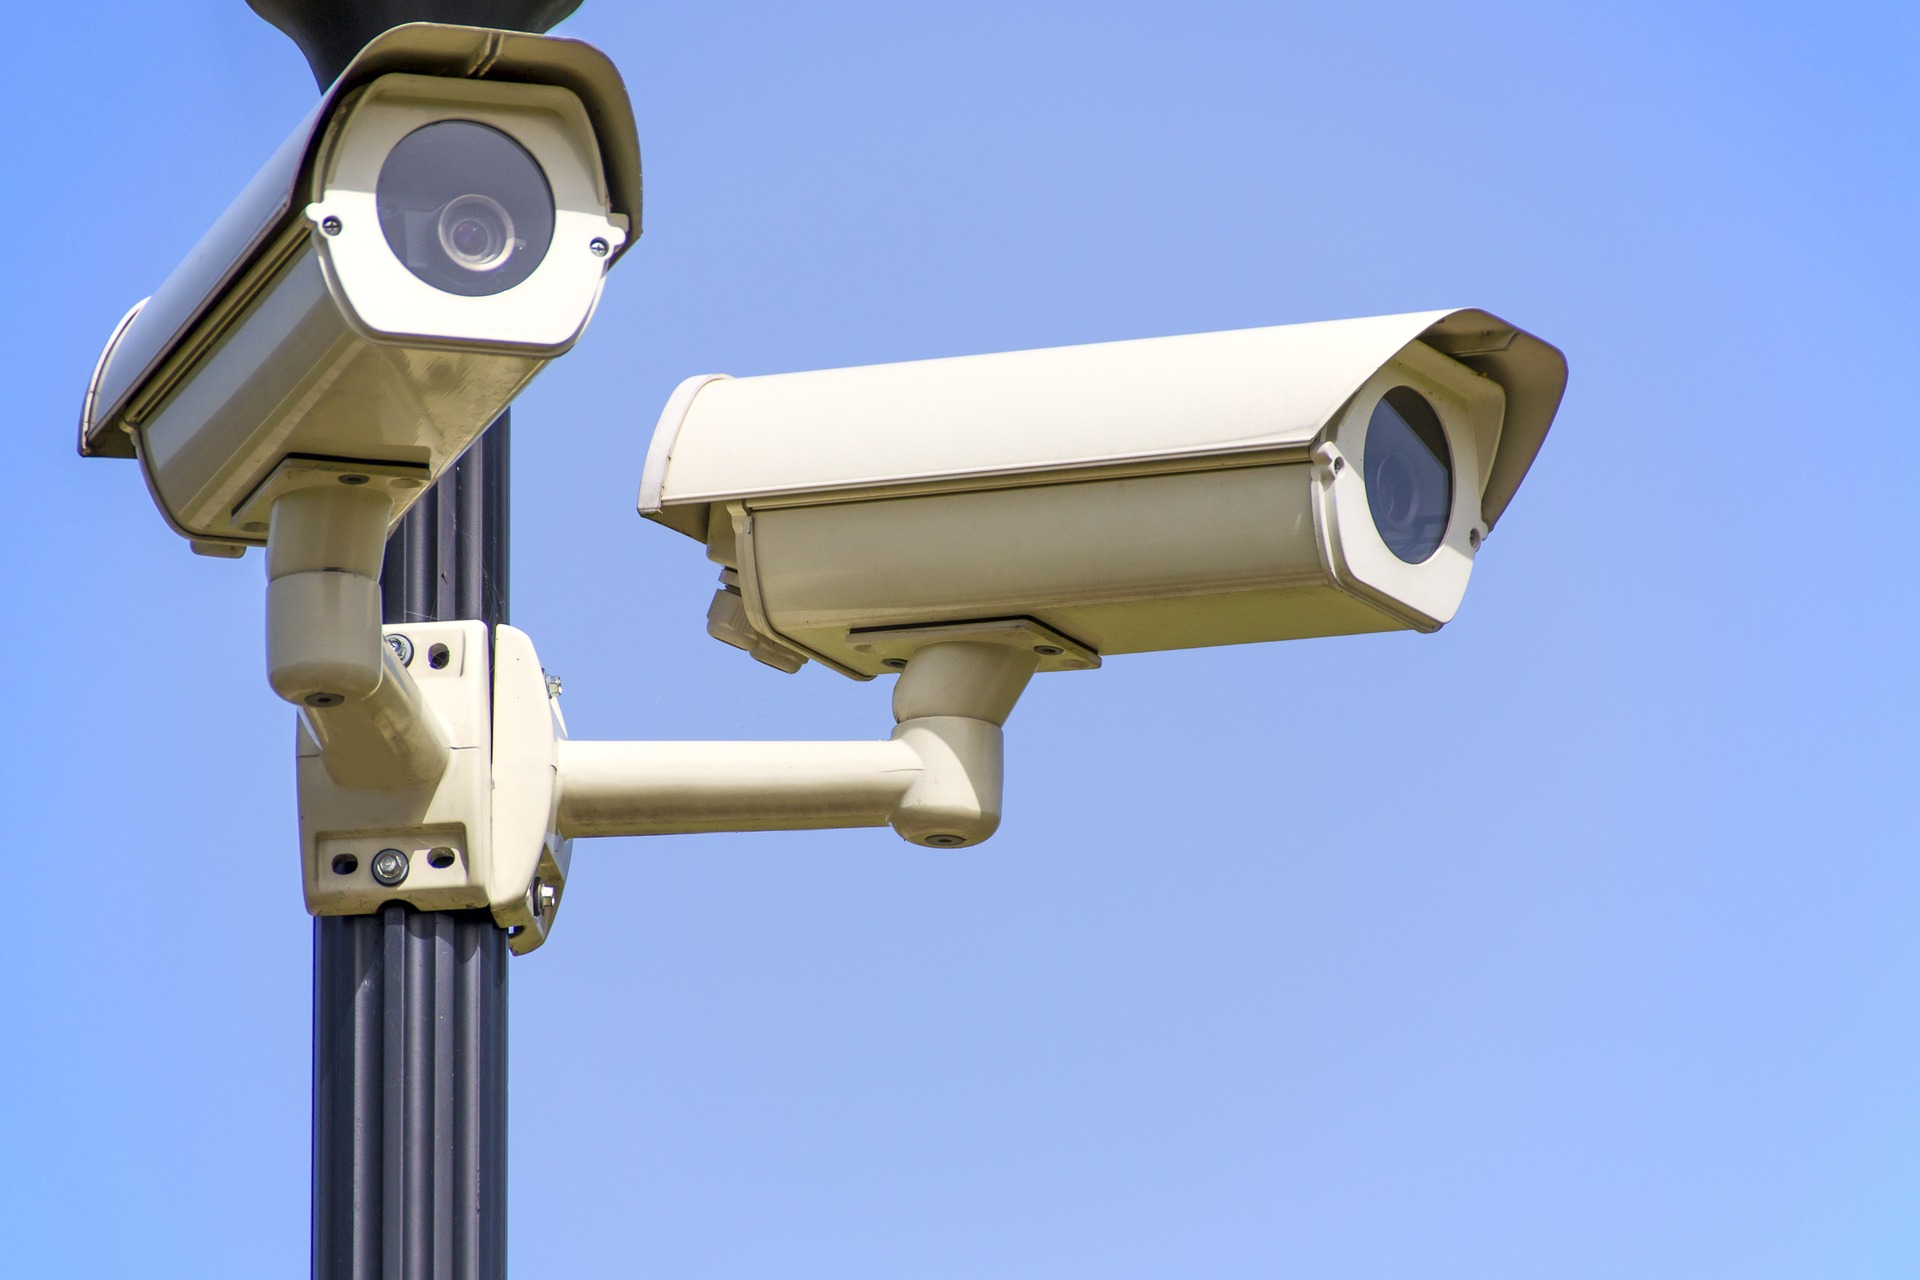 Un municipio descuenta tasas a quienes aportan sus cámaras particulares a la red de vigilancia